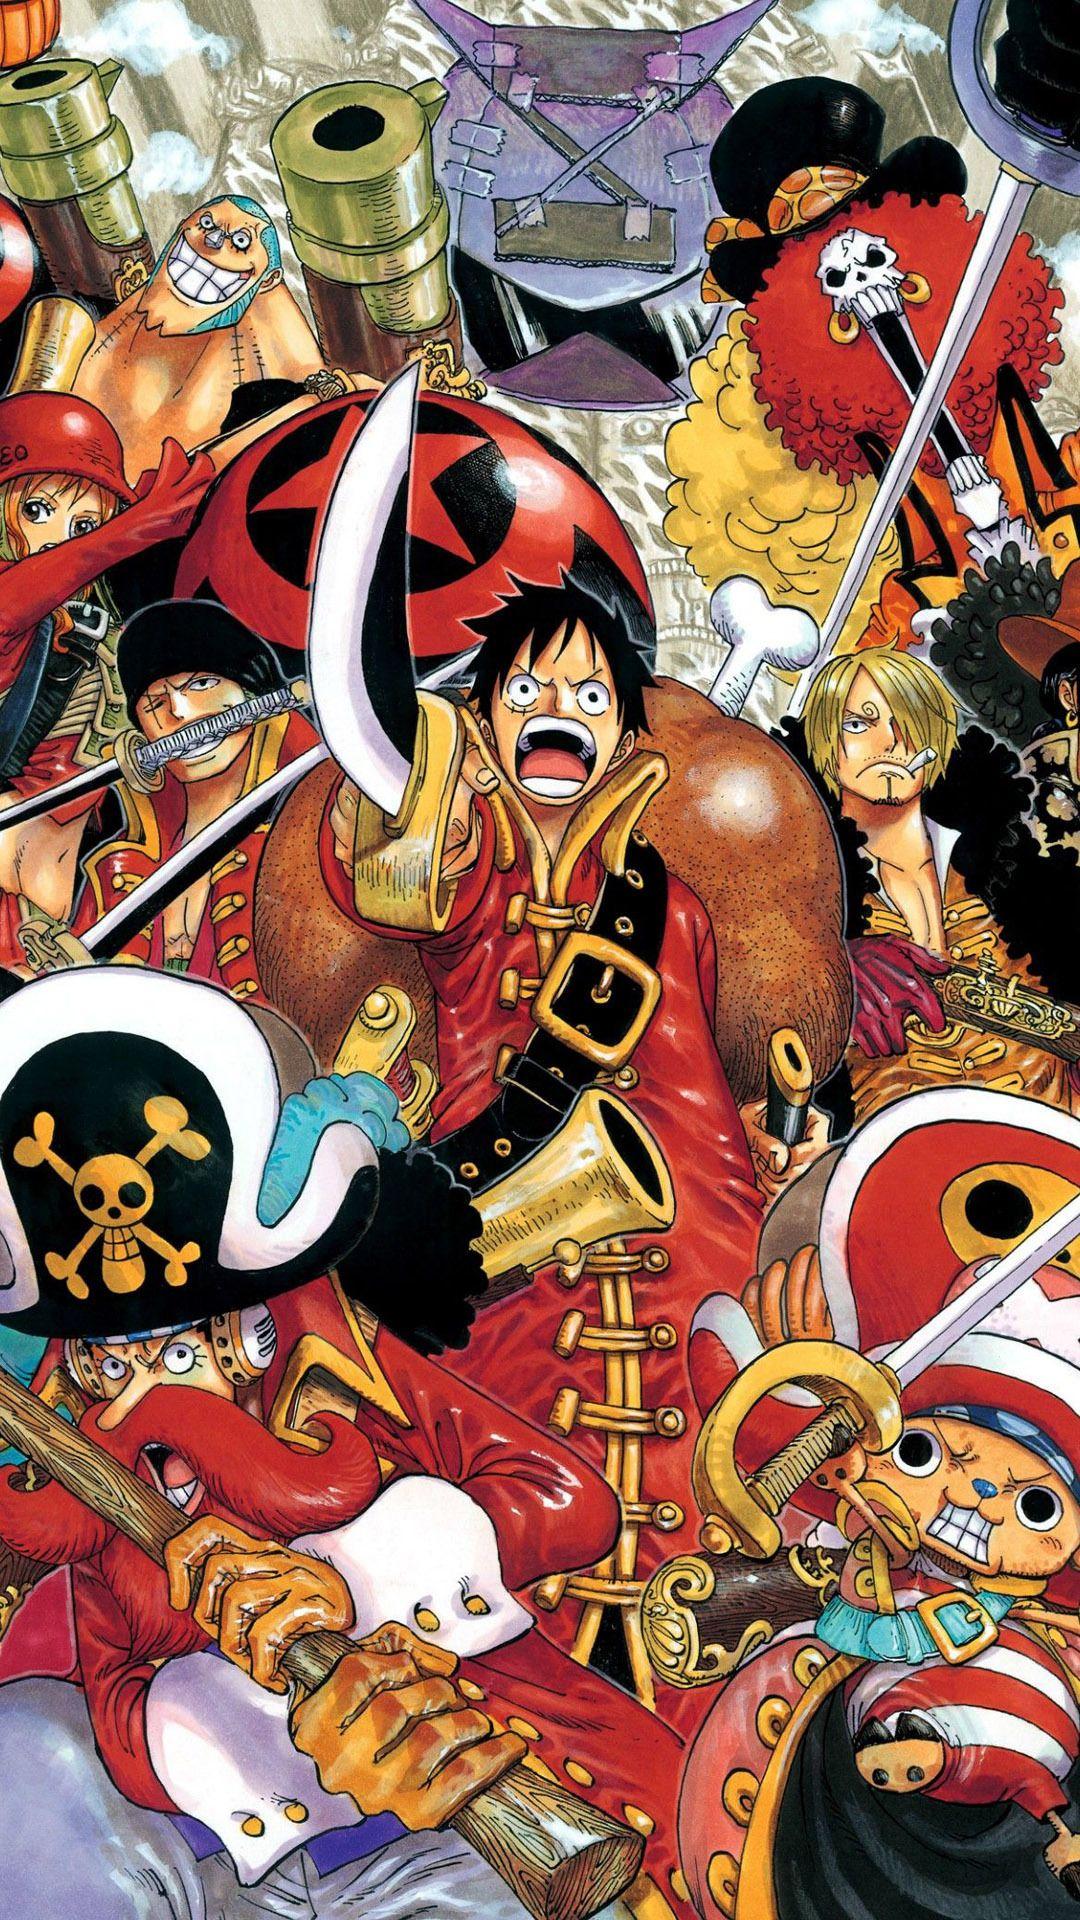 Download 70 Wallpaper One Piece Hd Untuk Hp Android terbaru 2019